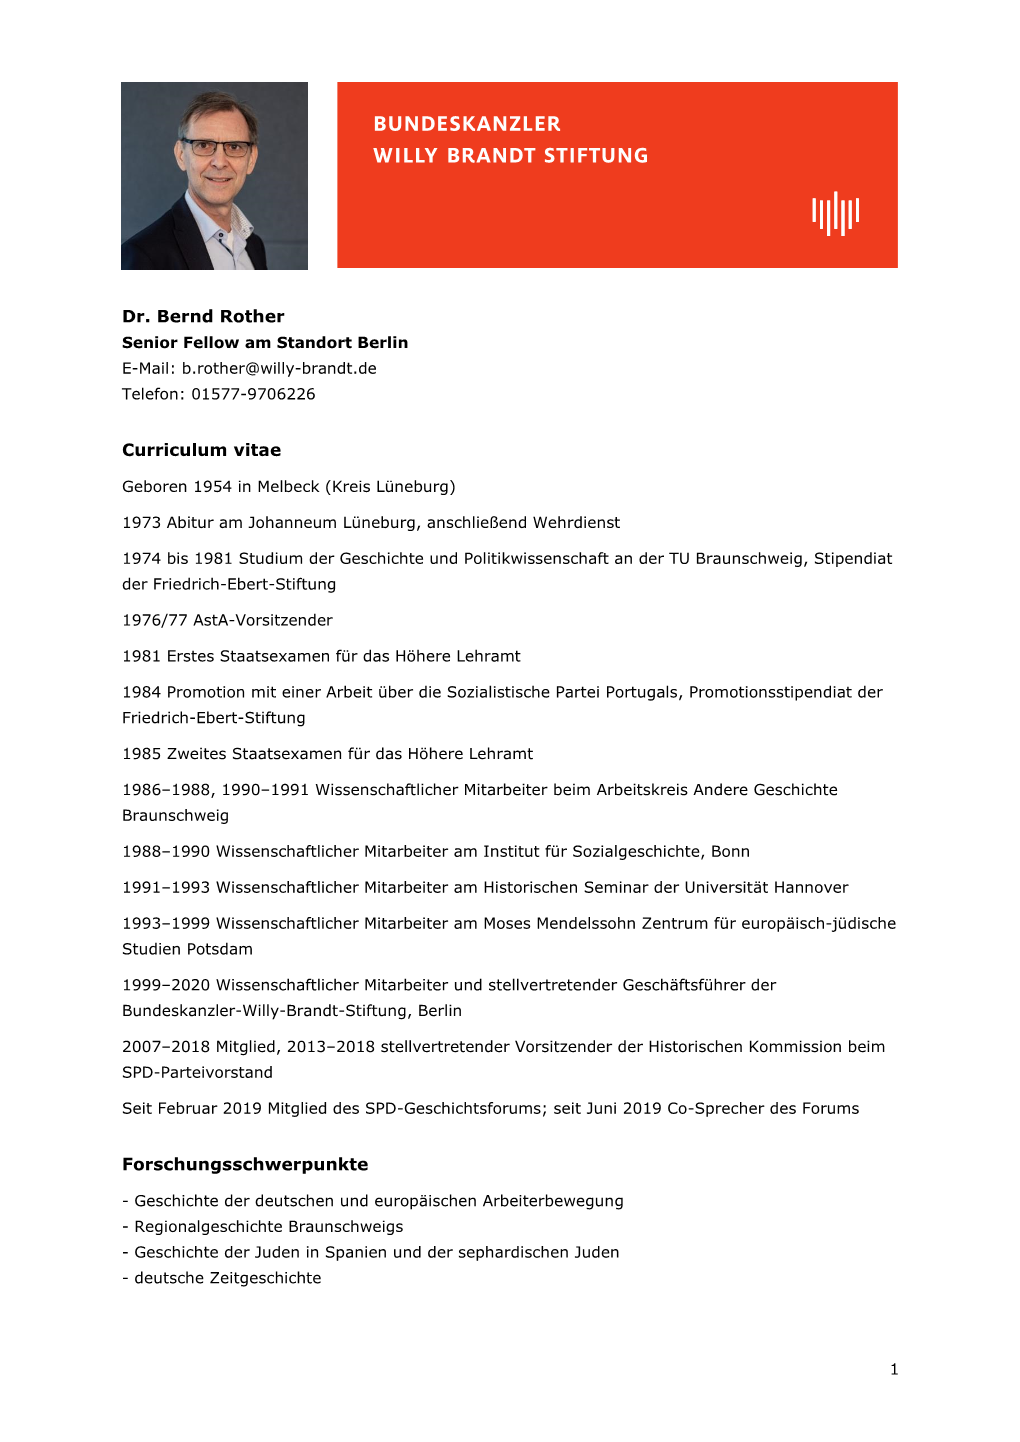 Dr. Bernd Rother Curriculum Vitae Forschungsschwerpunkte